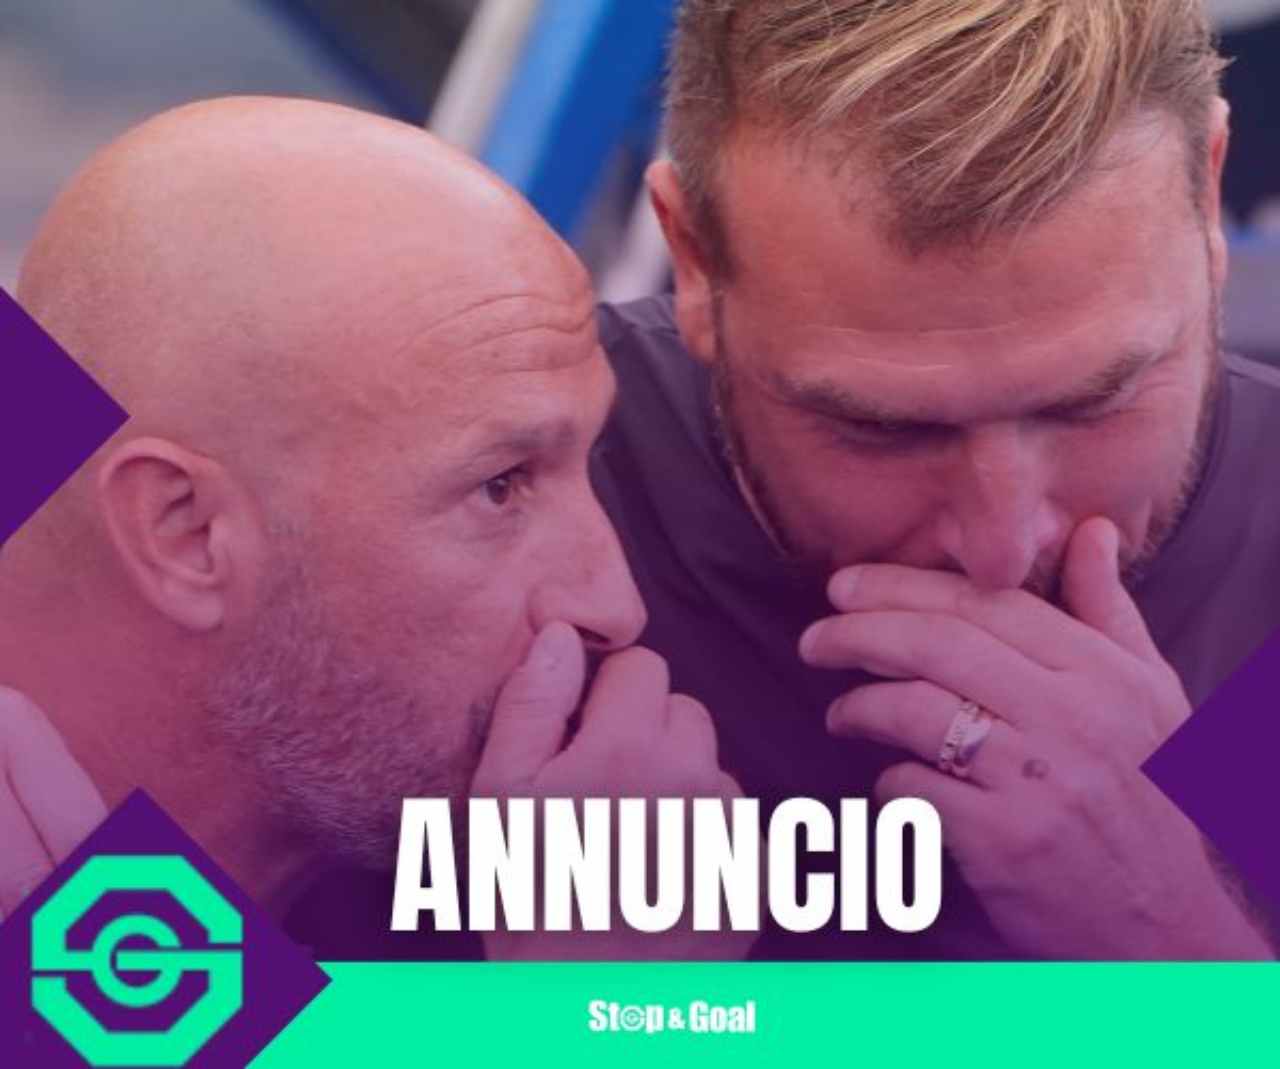 Esonero Serie A, annuncio - stopandgoal.com (La Presse)